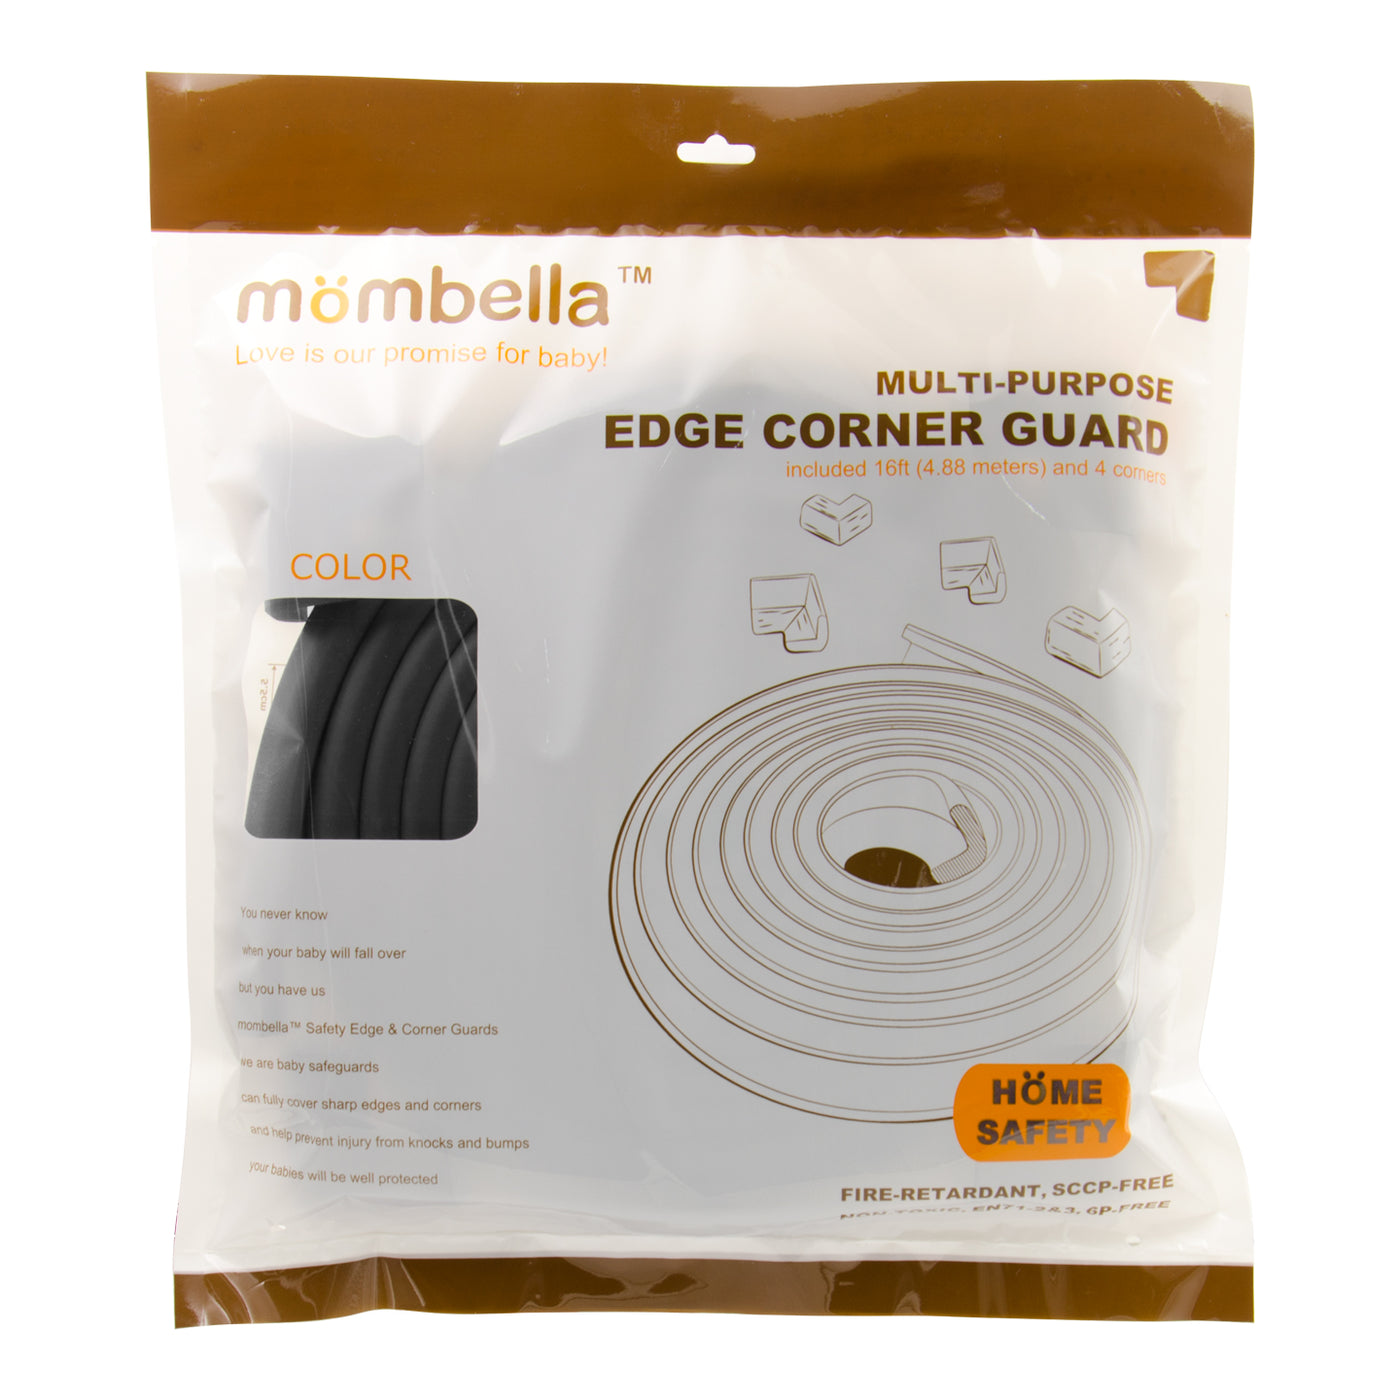 MOMBELLA Multi-purpose edge corner guard 16ft and 4 corners Home safety Black Color - mombella